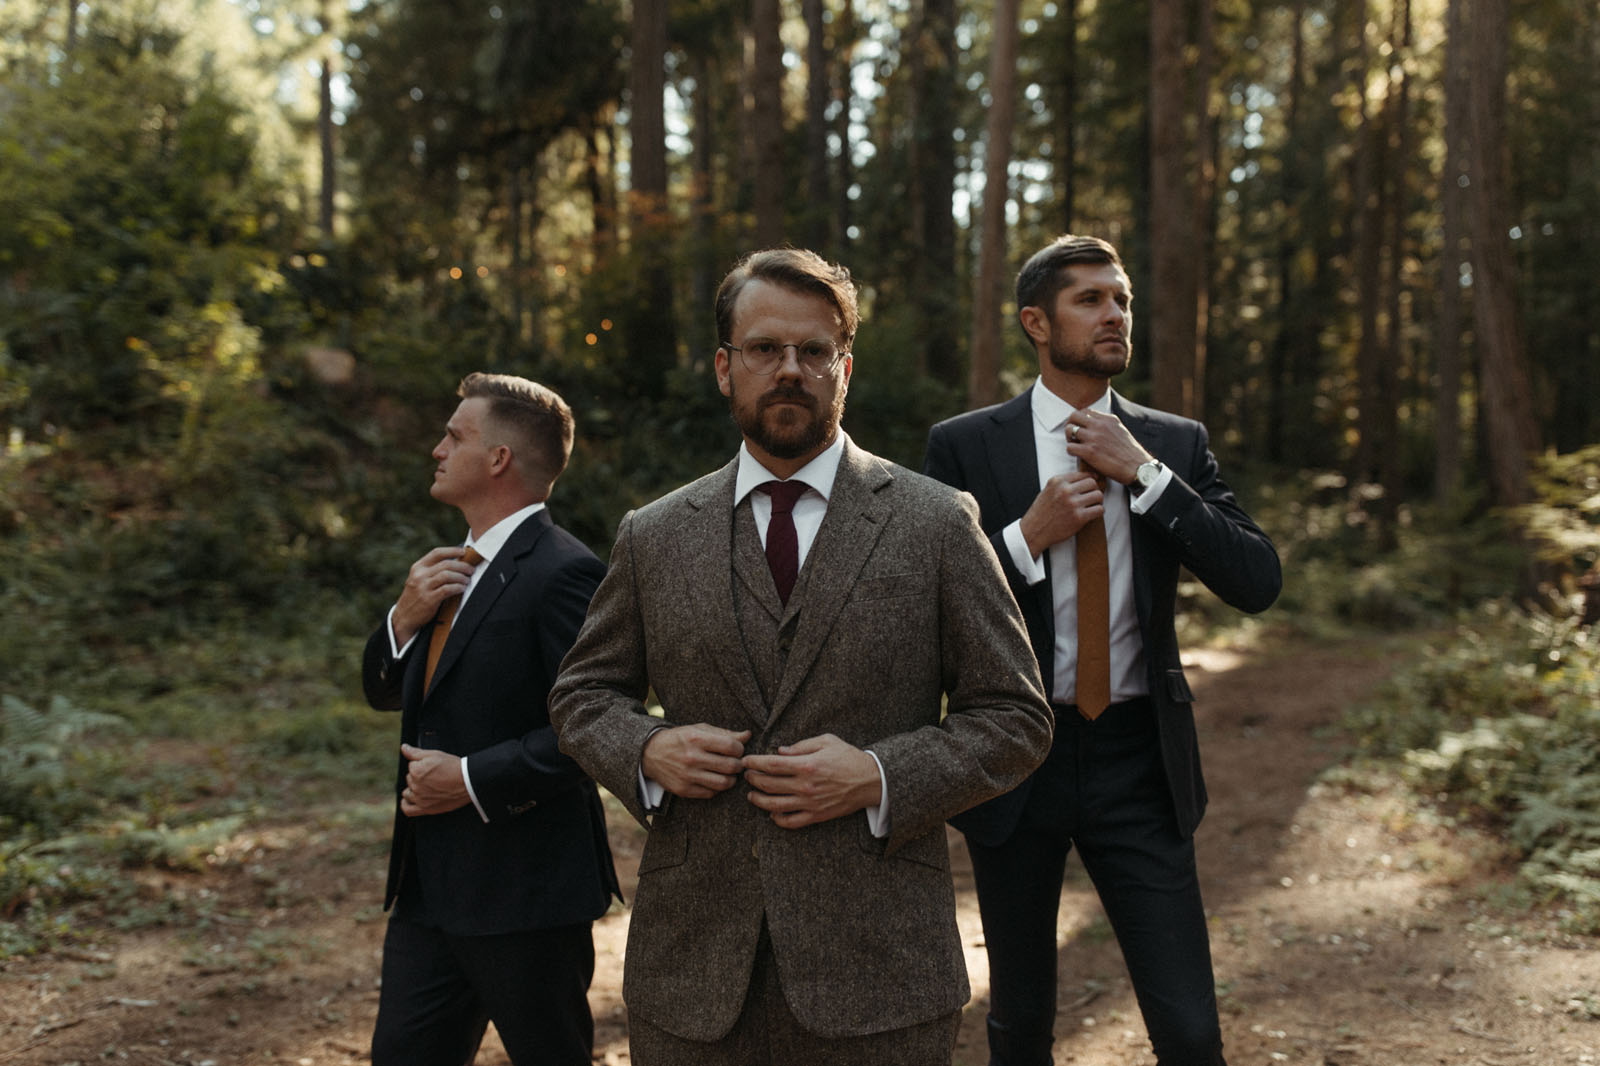 tweed groom's suit